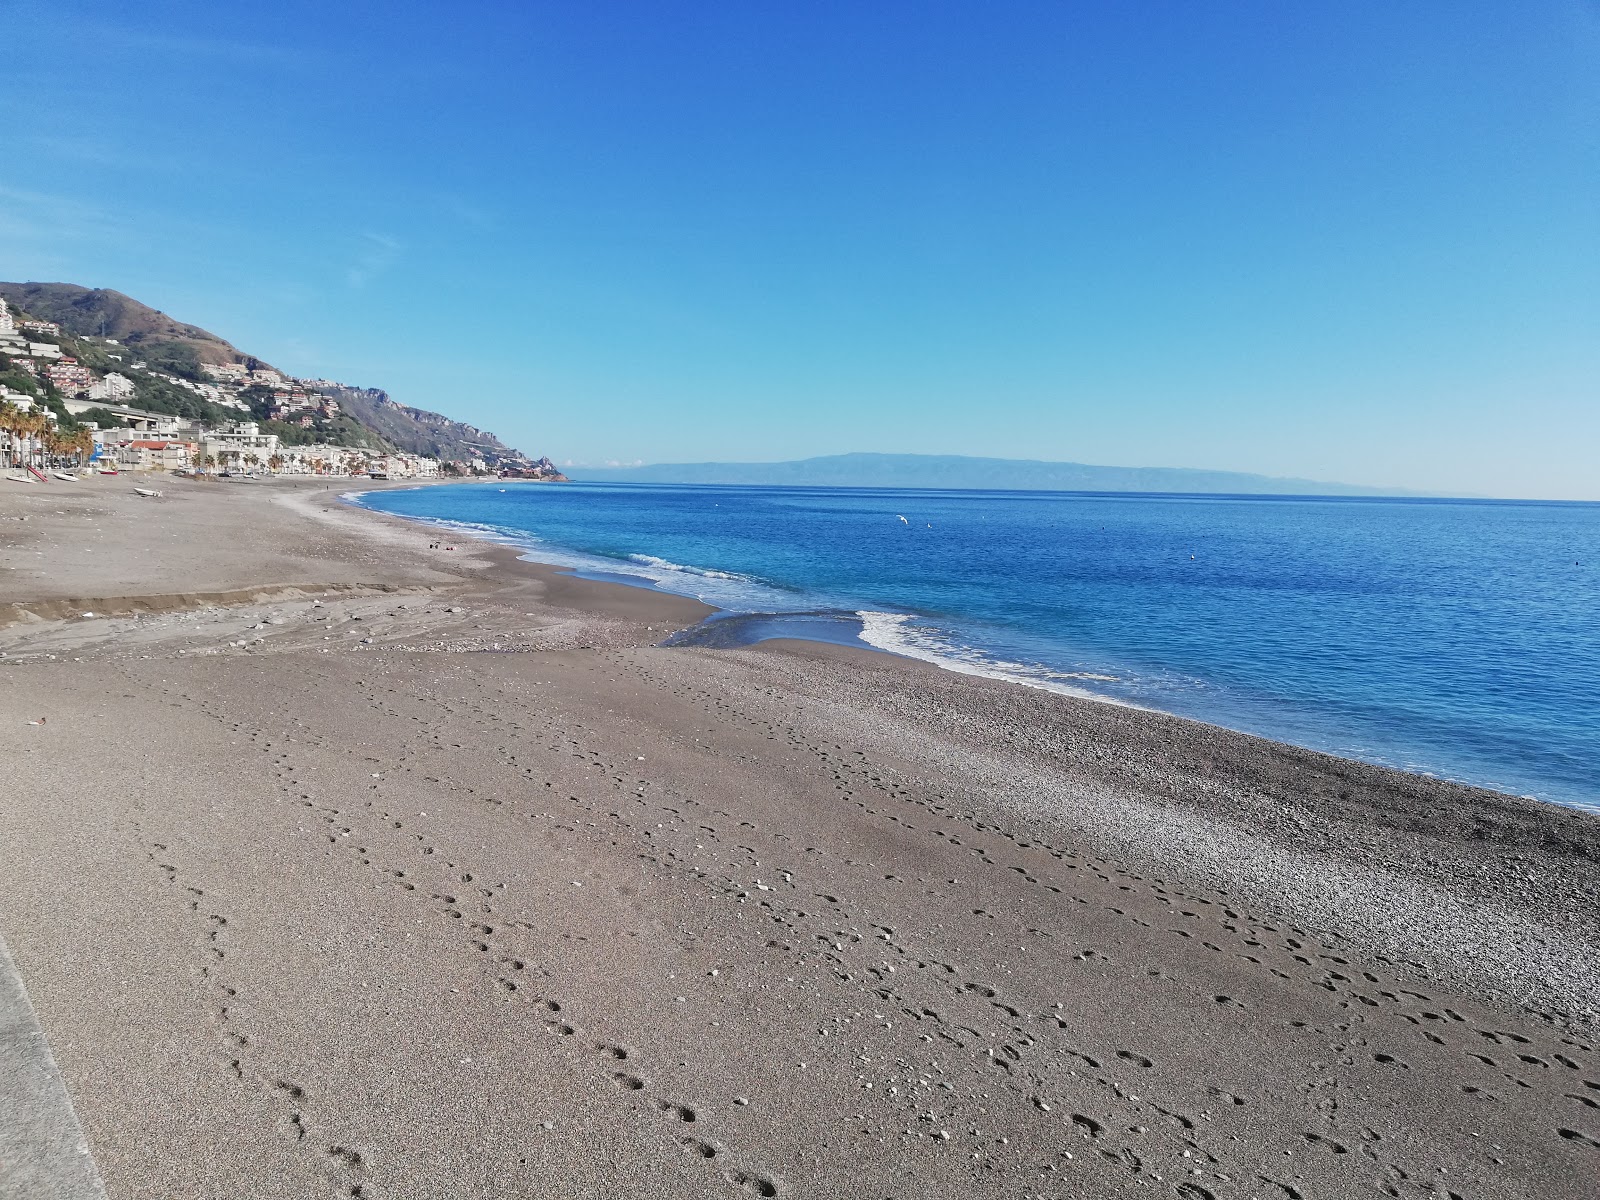 Foto av Spiaggia di Mazzeo och bosättningen